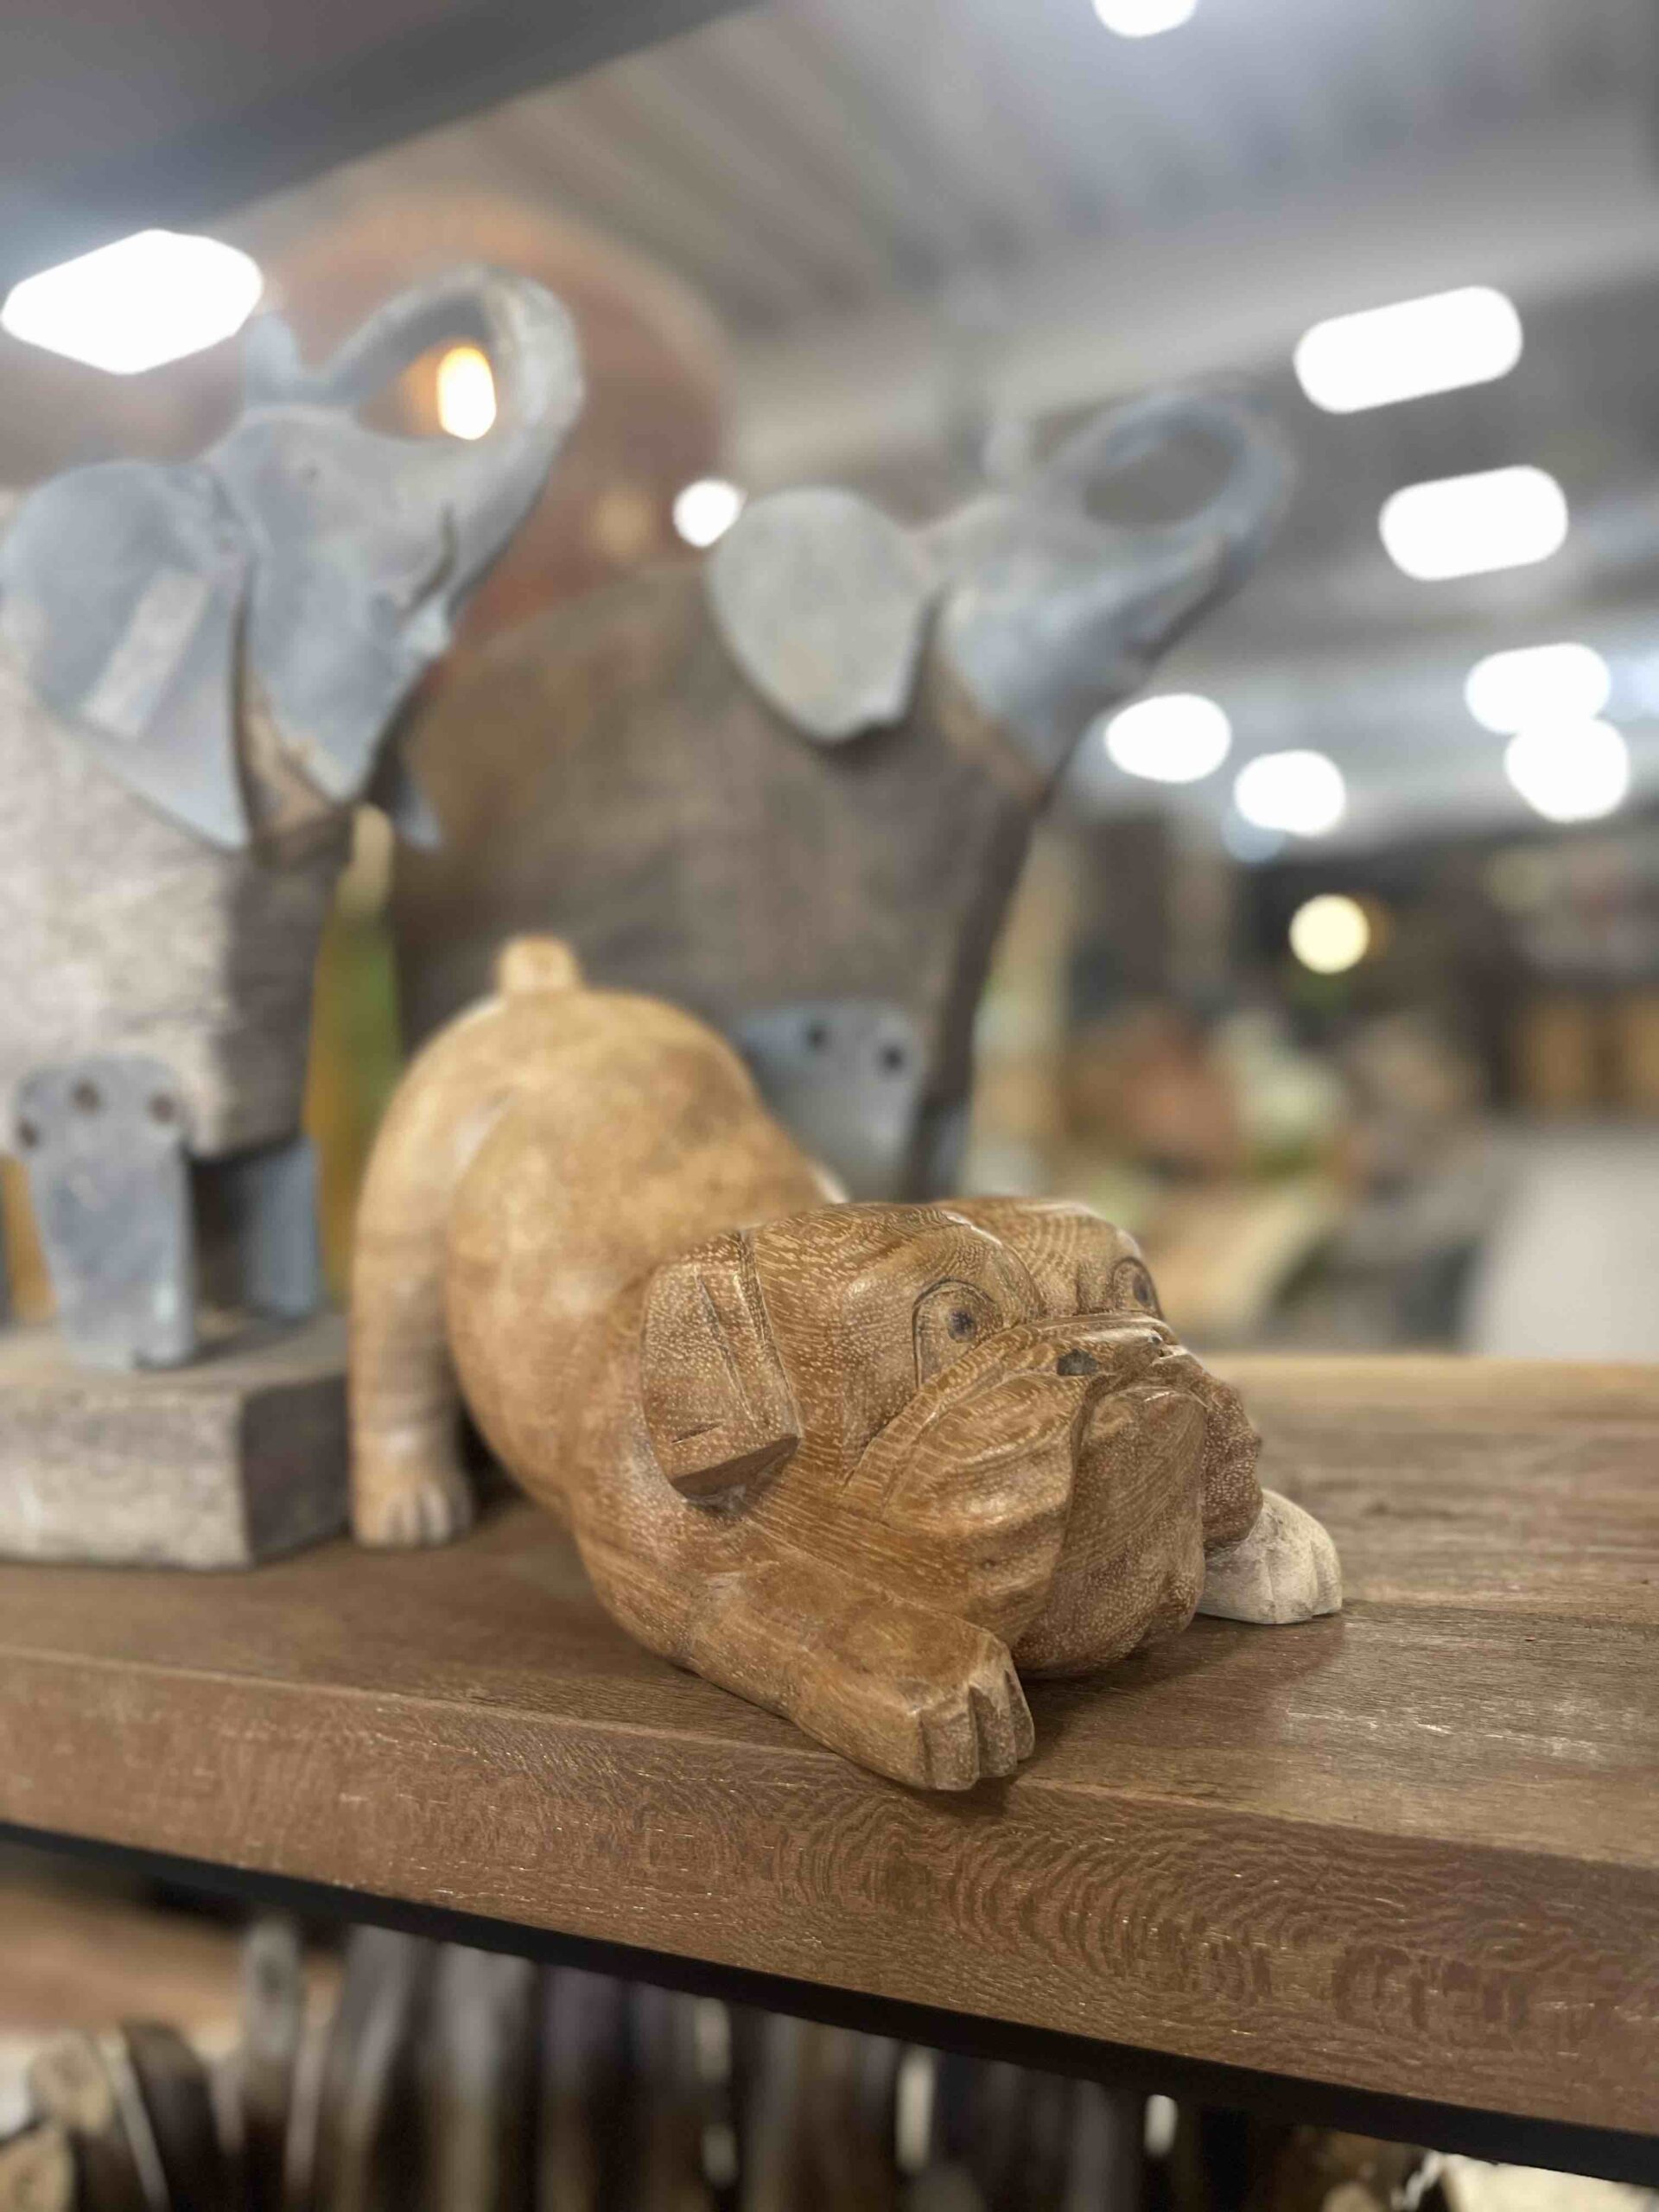 Houtsnijwerk bulldog is met de handgesneden uit een stuk suar hout.